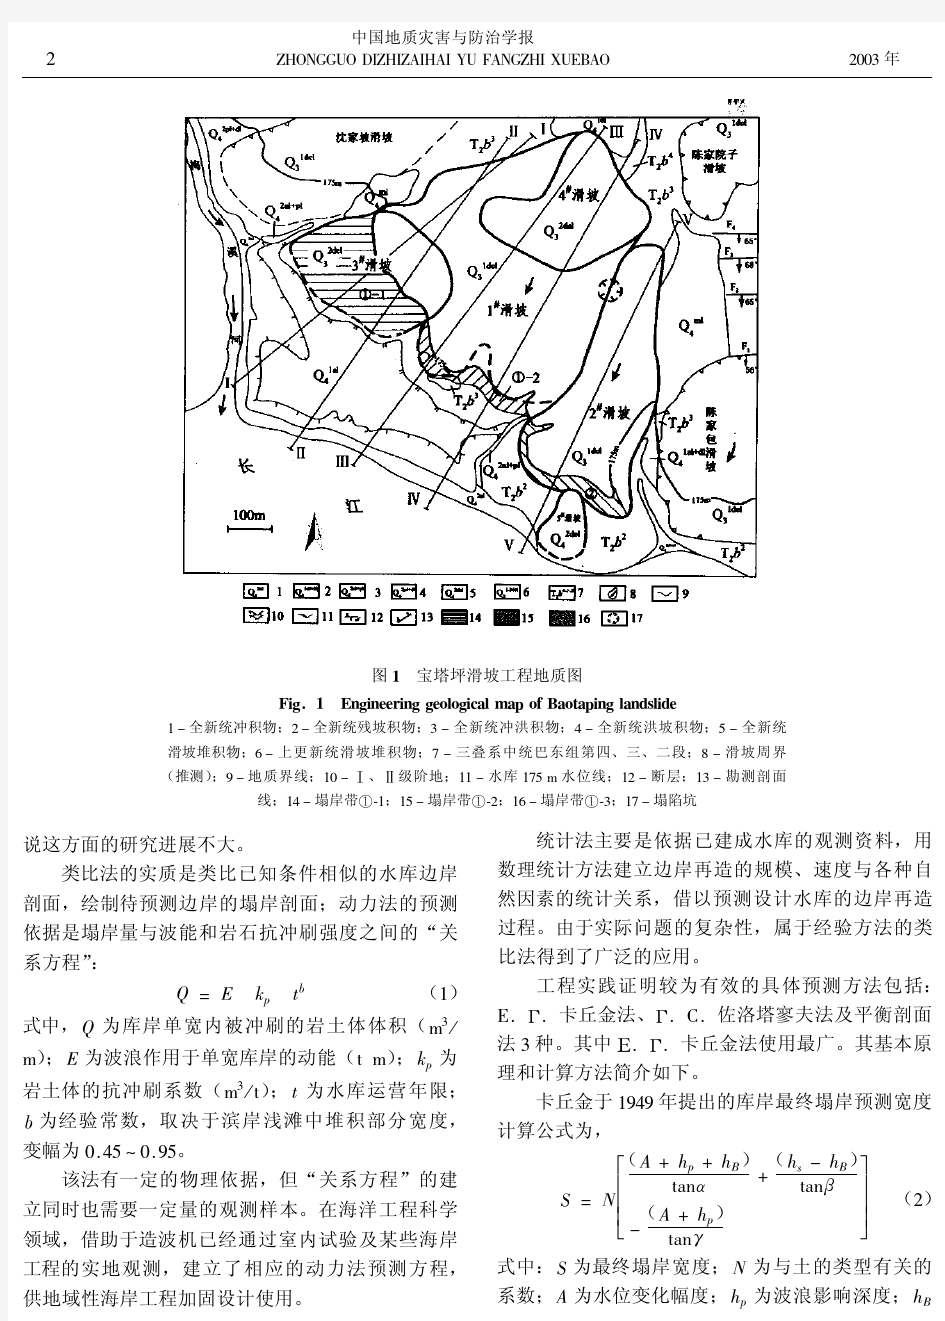 长江三峡工程库区宝塔坪滑坡前缘塌岸预测及防护